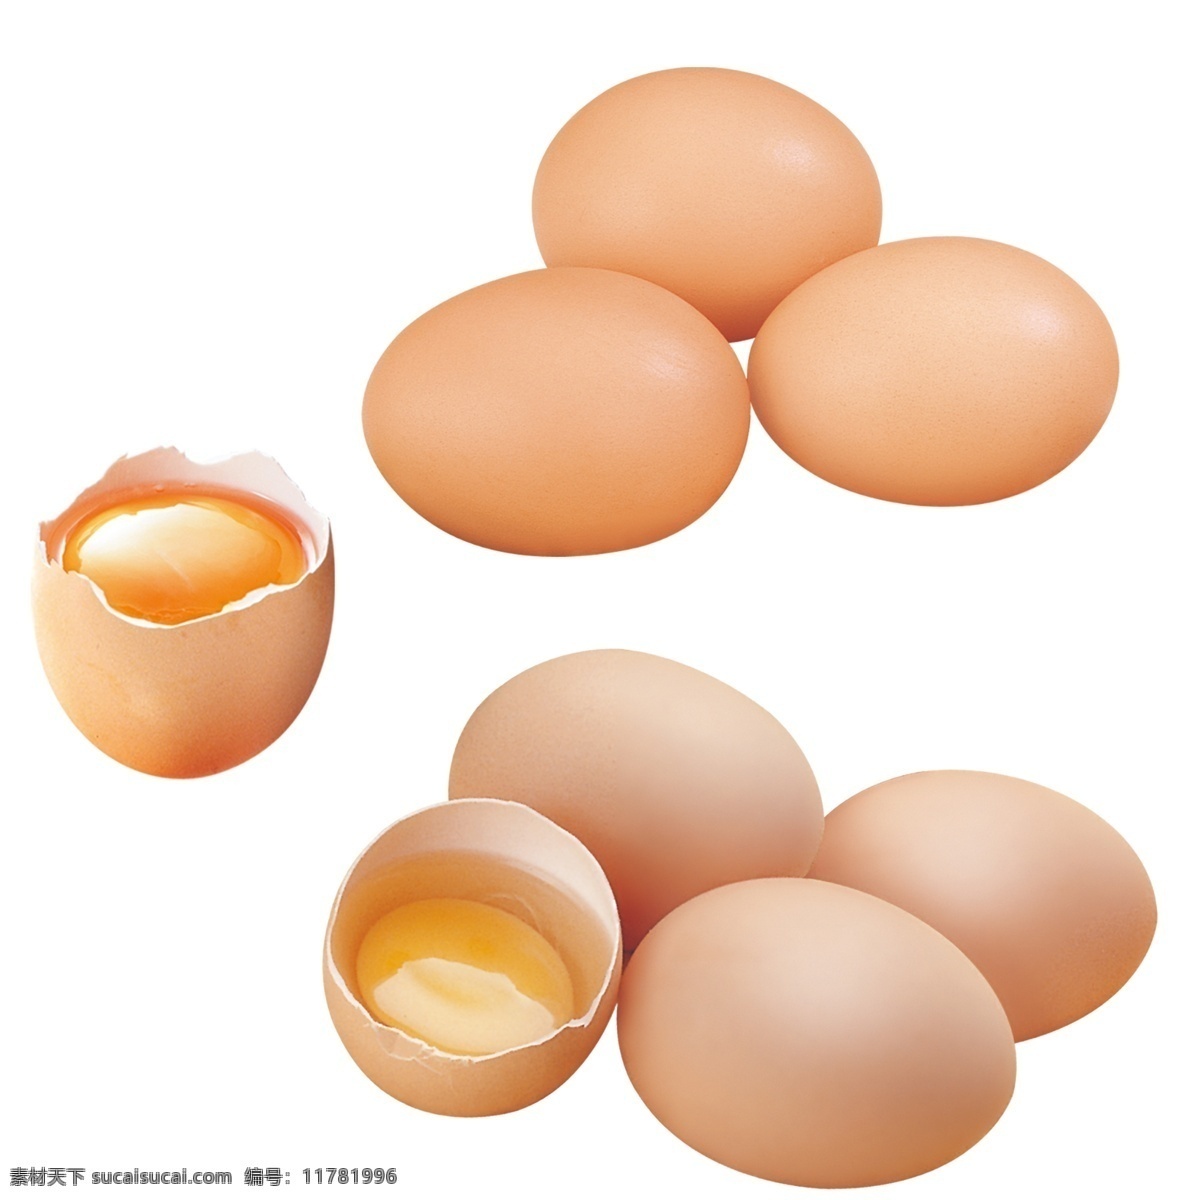 打开的鸡蛋 鸡蛋素材 鸡蛋元素 鸡蛋 柴鸡蛋 土鸡蛋 蛋 蛋类 食材 禽蛋 笨鸡蛋 蛋壳 破碎的鸡蛋 打鸡蛋 蛋清